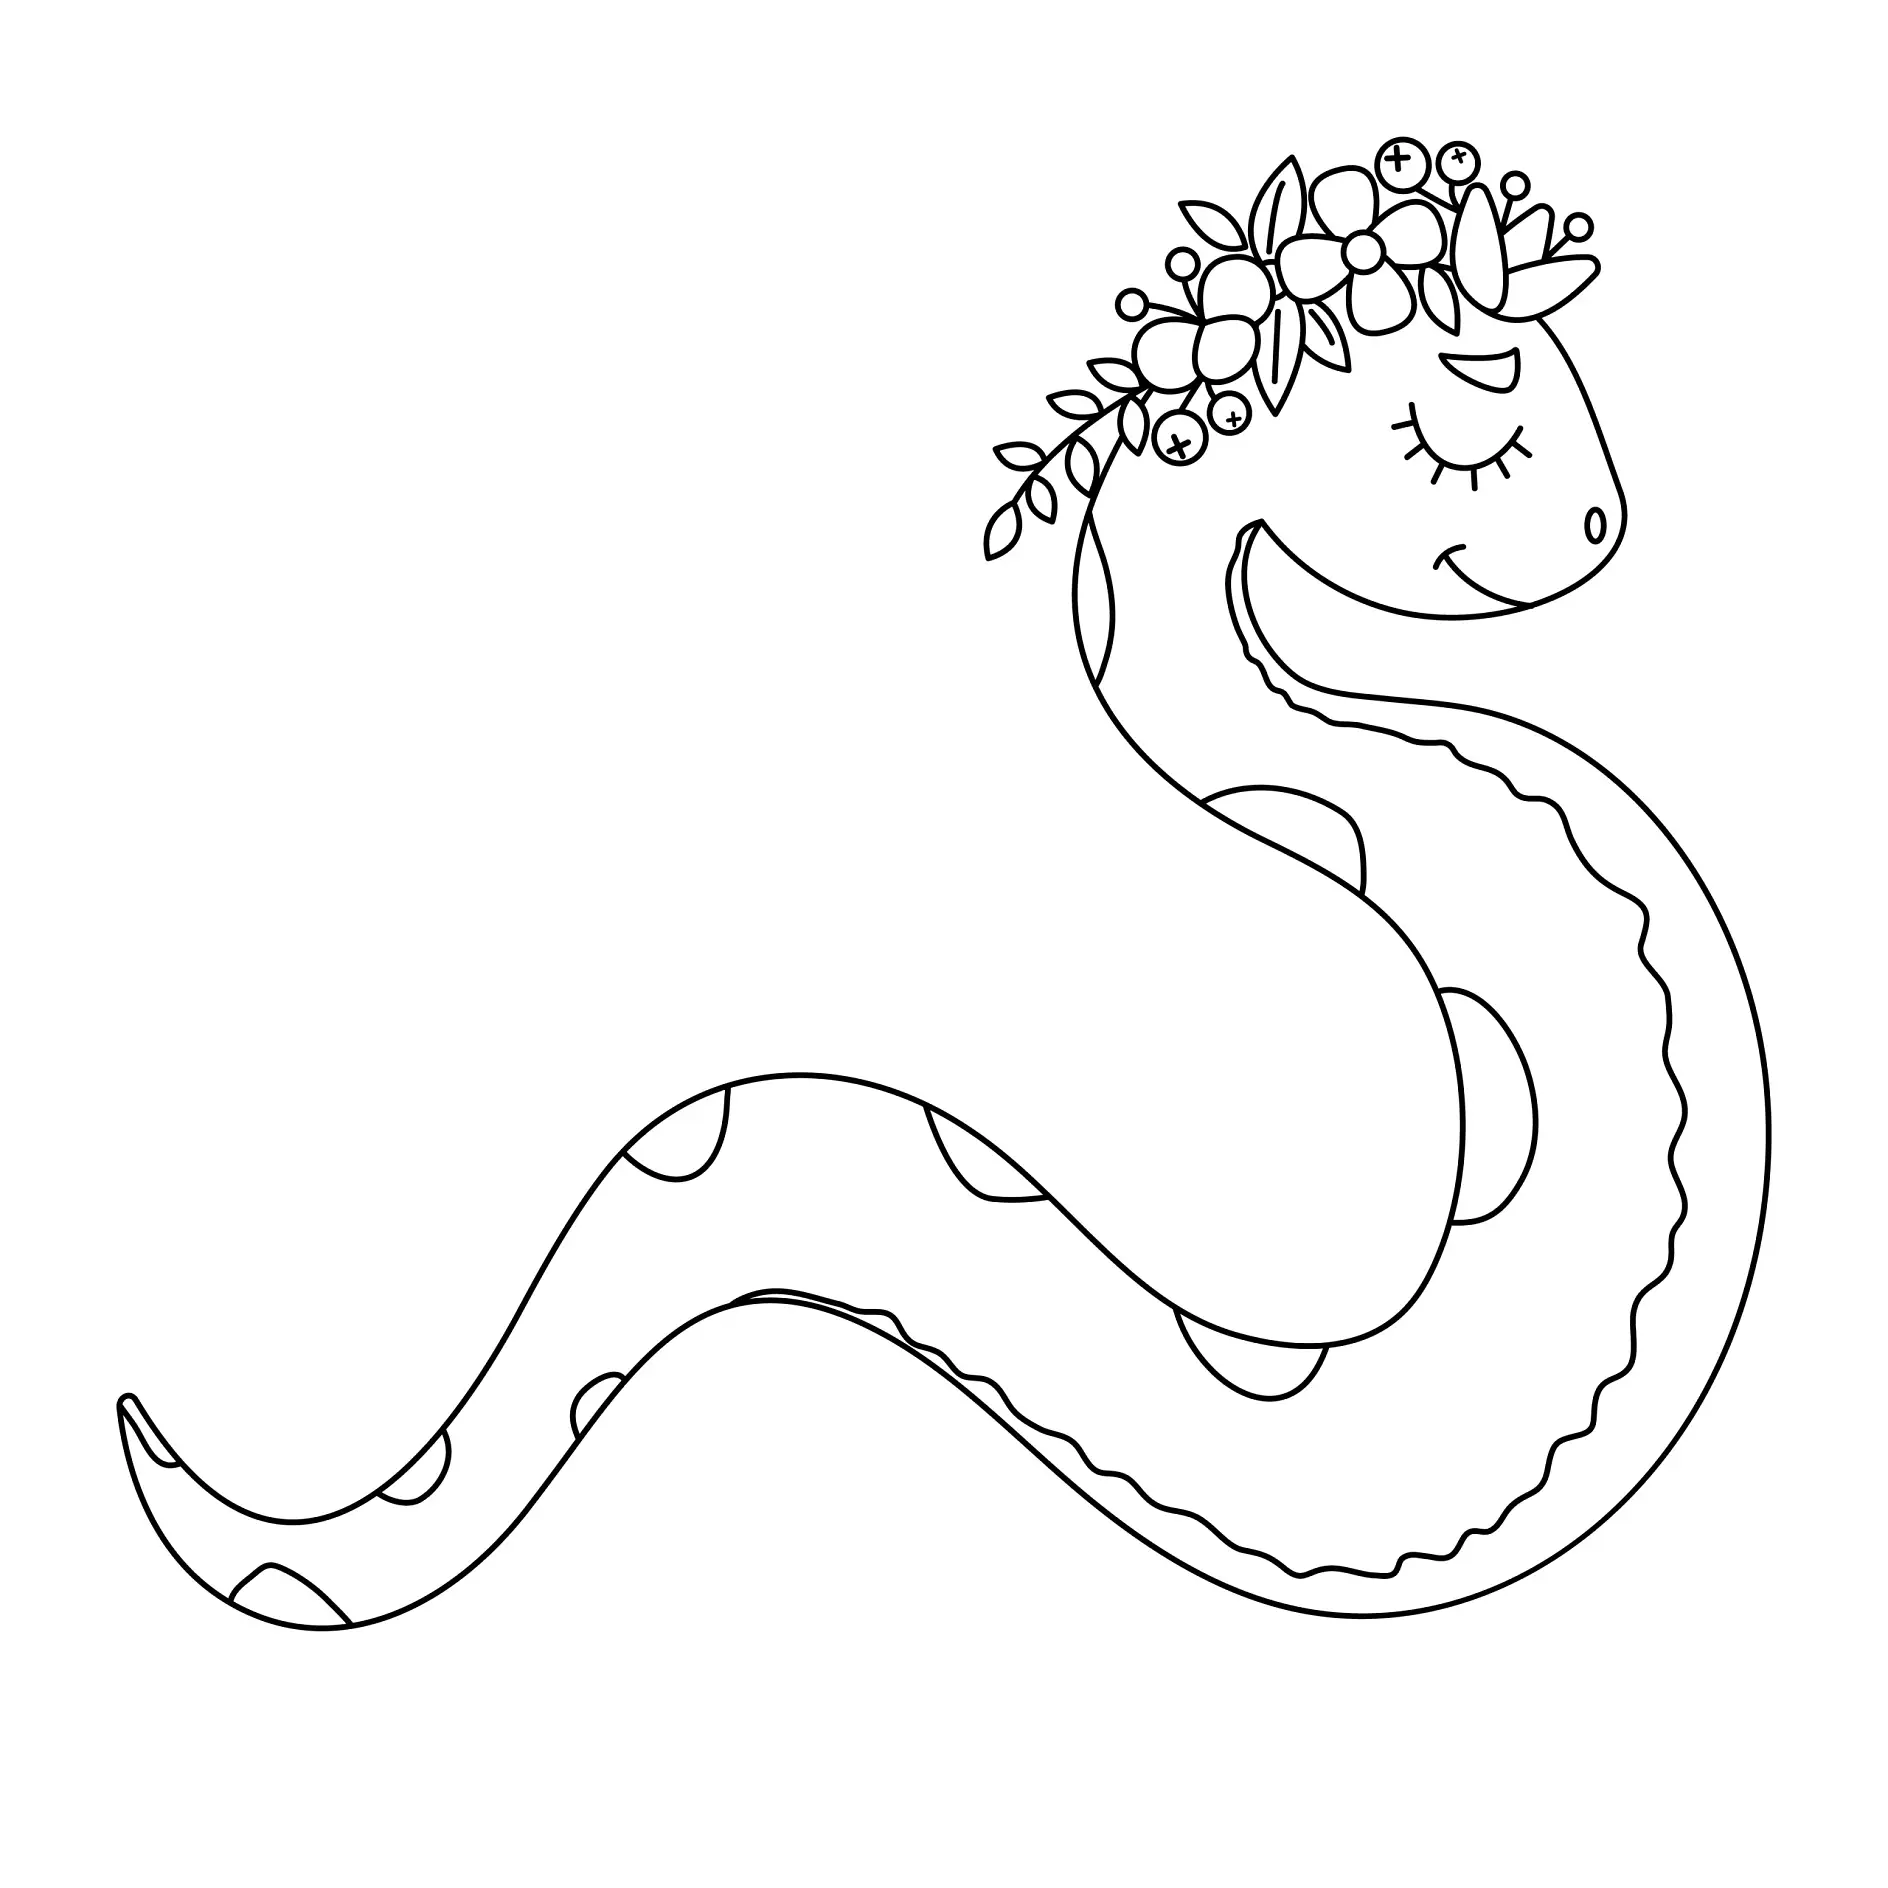 Ausmalbild Schlange mit Blumenkranz